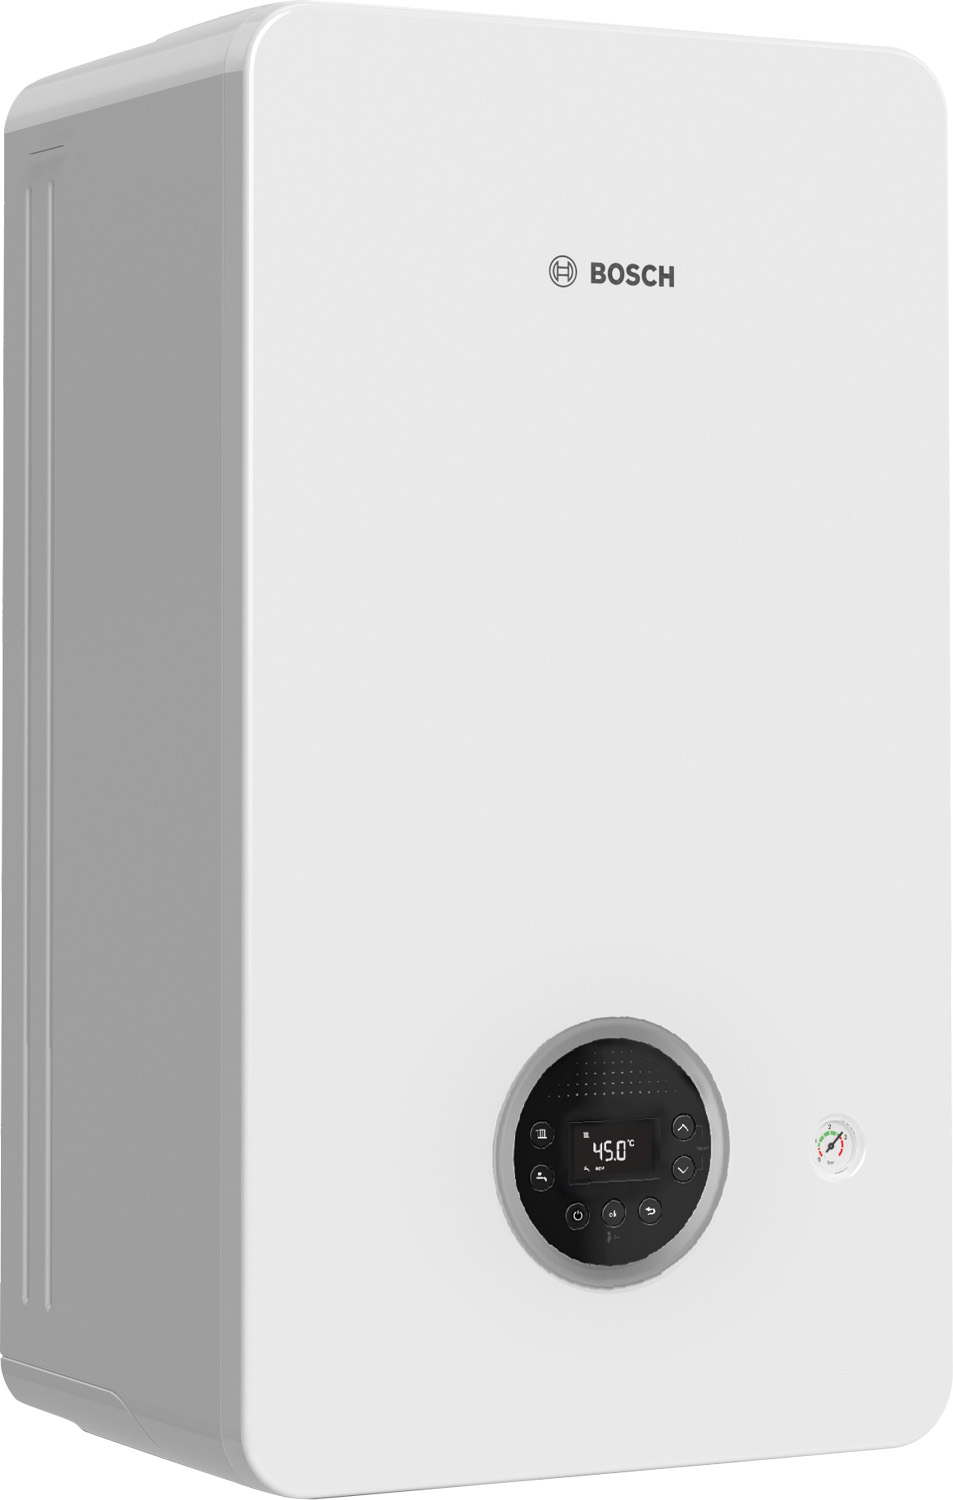 Газовый котел Bosch Condens GC2300iW 24/30 C 23 (7736902153) характеристики - фотография 7